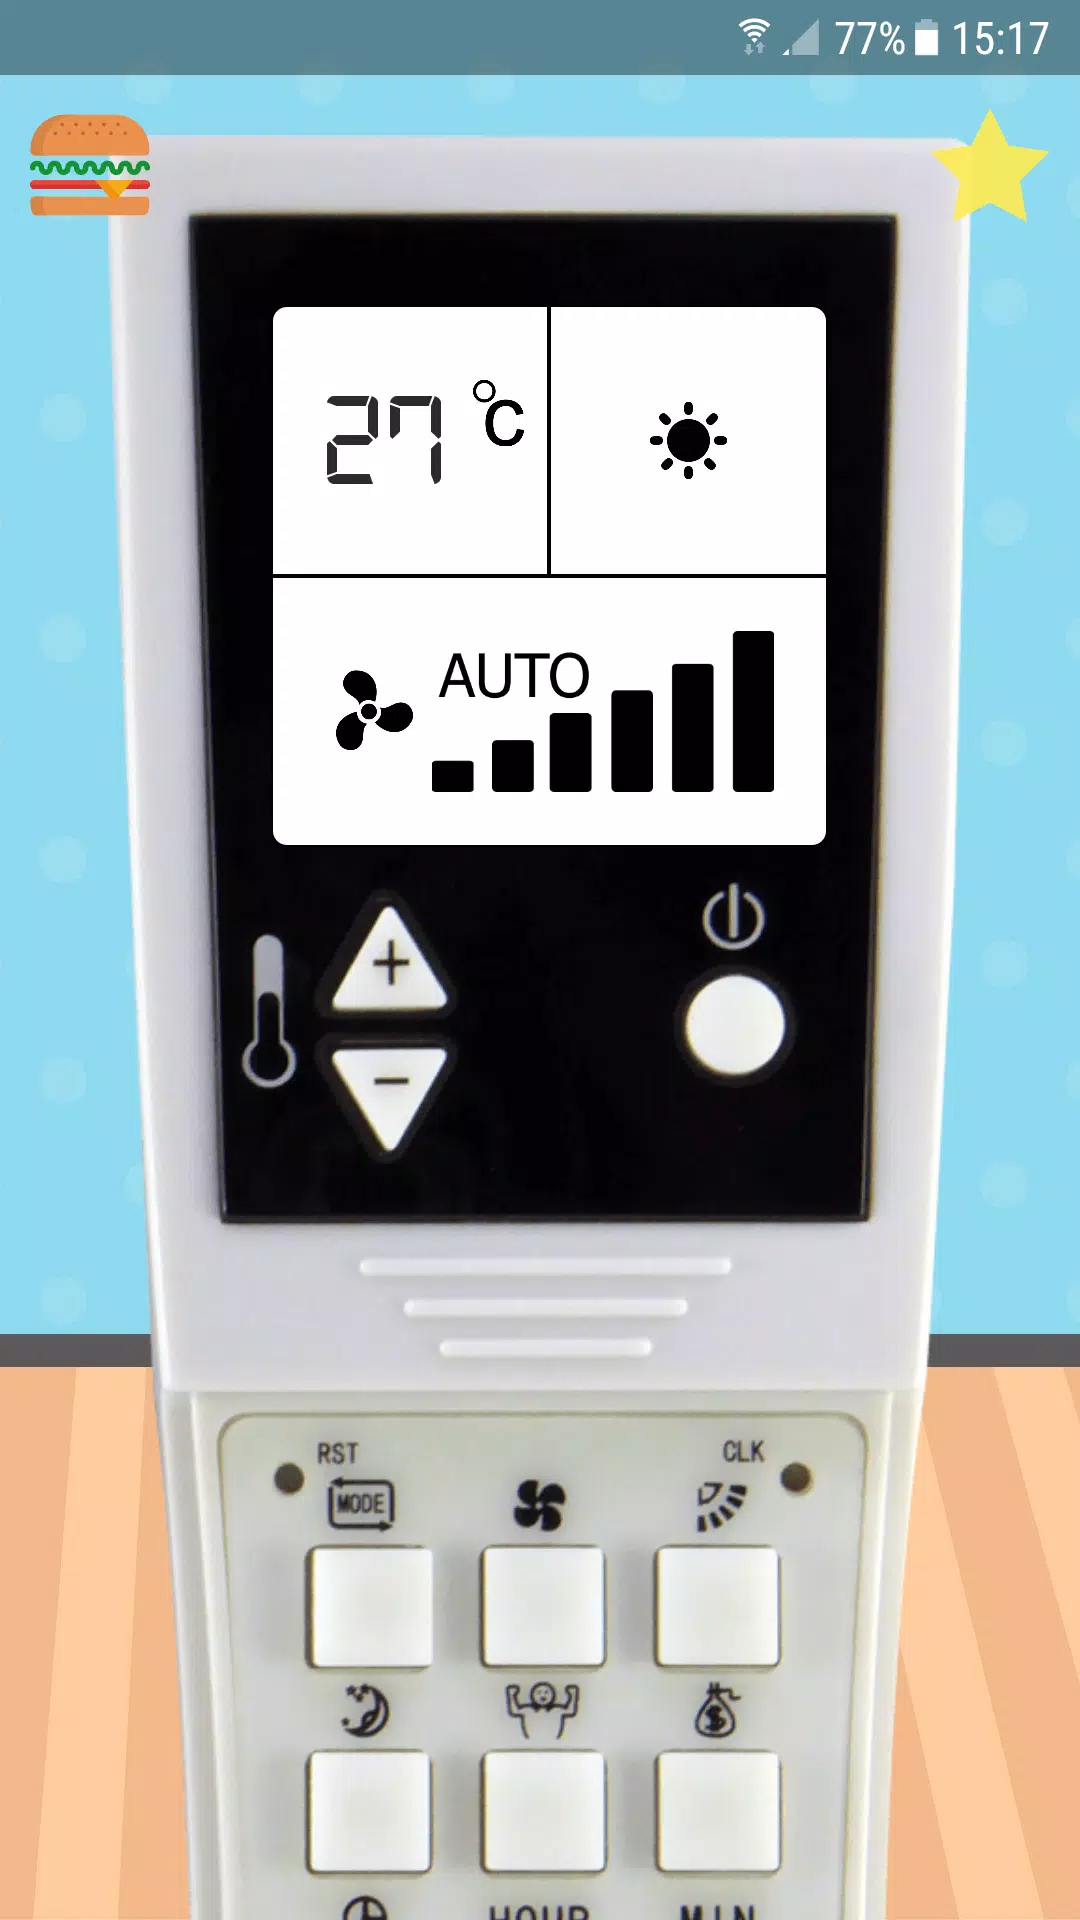 Descarga de APK de Control remoto para el aire acondicionado Zenith para  Android